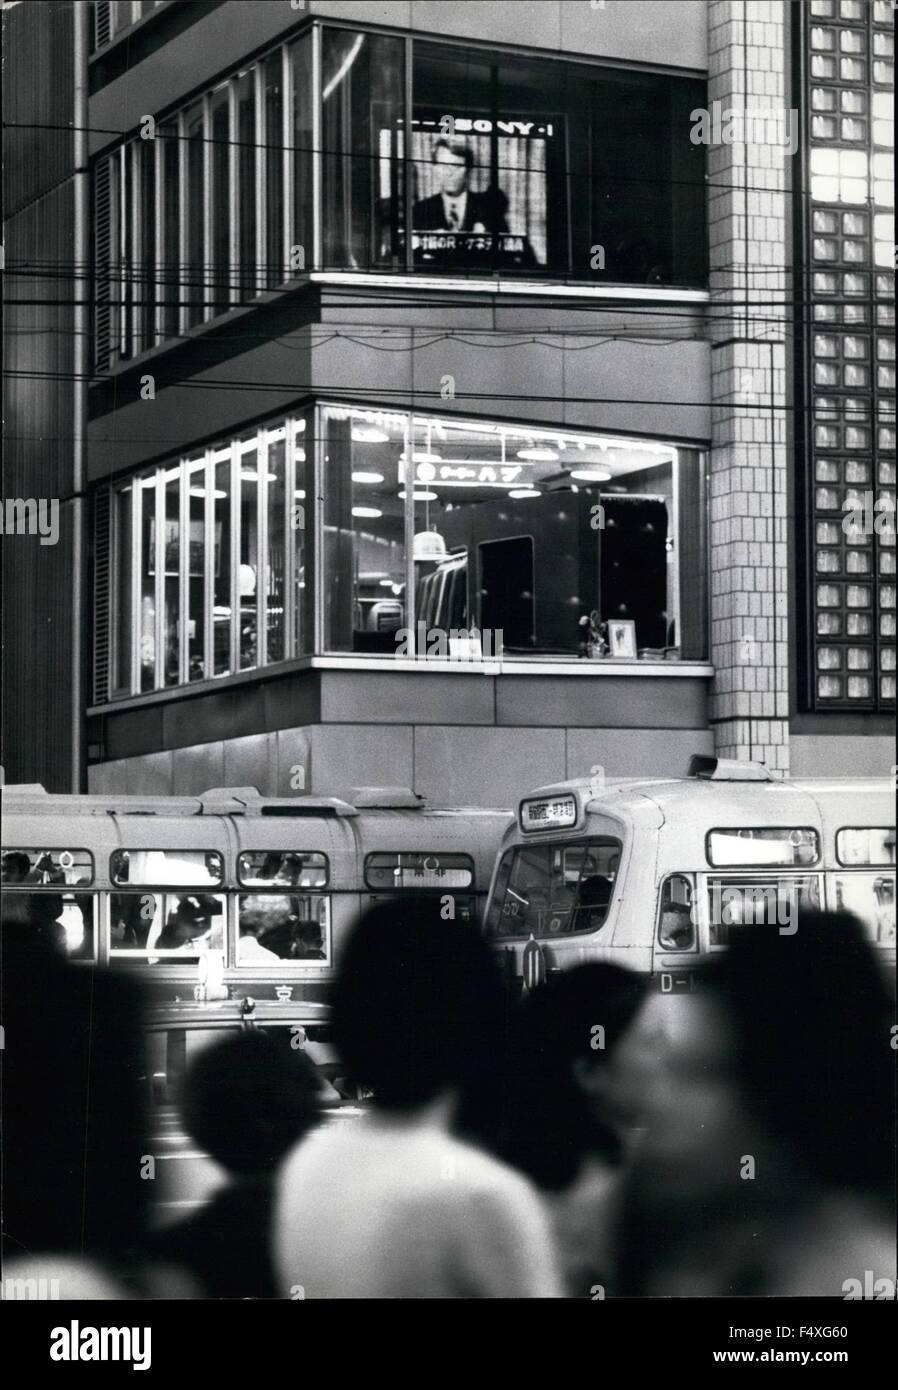 1968 - Tokyo's King-Size Set Tv Color: un enorme televisore a colori con un 100 pollici (2,5 metri) è la schermata che mostra i programmi per il pubblico dal terzo piano dell'edificio di Sony a Sukiyabashi, Tokyo. Il gruppo che ha preso la società due anni per costruire è creduto per essere il più grande del mondo. Un totale di 78.000 lampadine elettriche di rosso, blu e verde sono i colori utilizzati nella serie invece del solito tubo. Un calcolatore elettronico alimenta le lampadine con impulsi elettrici ricevuti da un'antenna. La versione di prova di costo di fabbricazione su &pound;10,000 (7,777). Il televisore mostra da 6-30 a 9-30 pm quotidianamente. Mostra fotografica Foto Stock